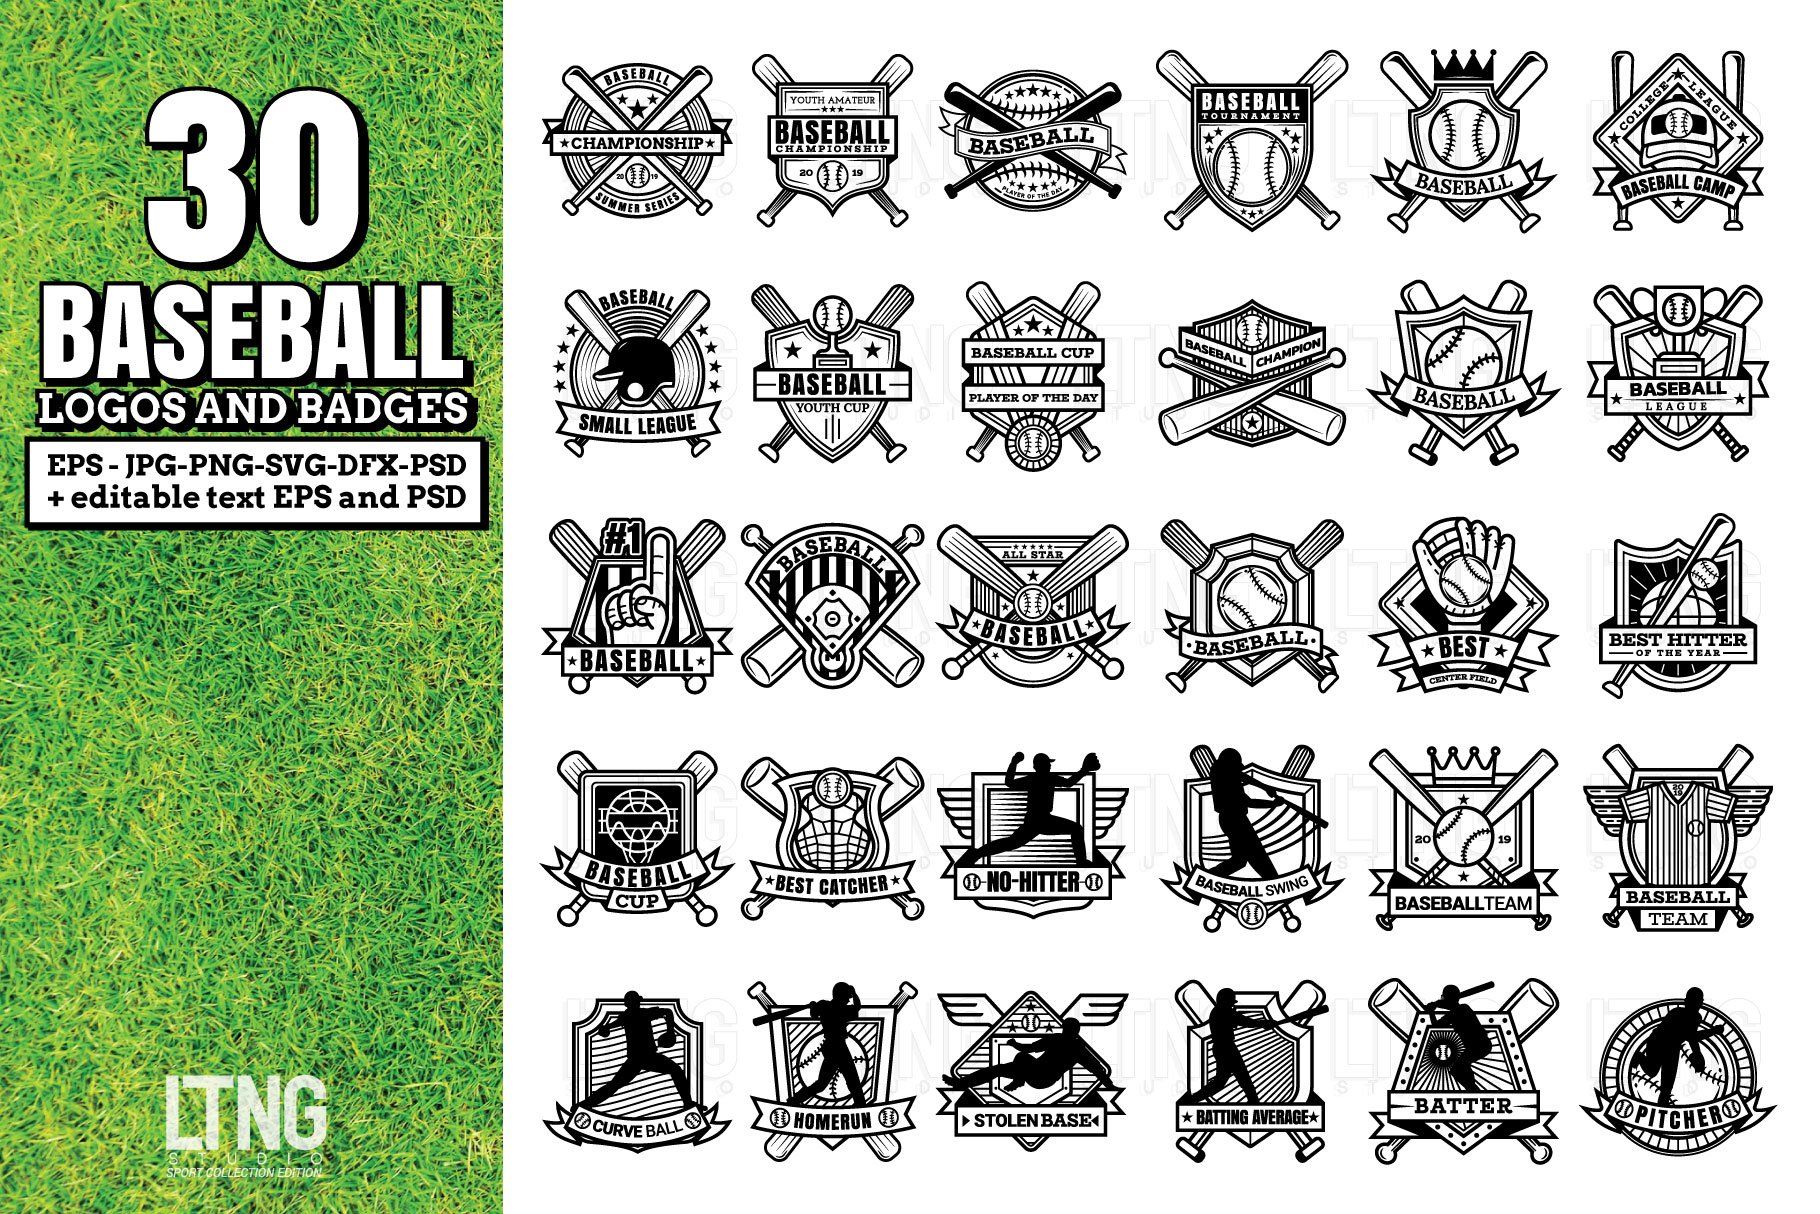 BASEBALL: Major League Baseball crests 2020 infographic